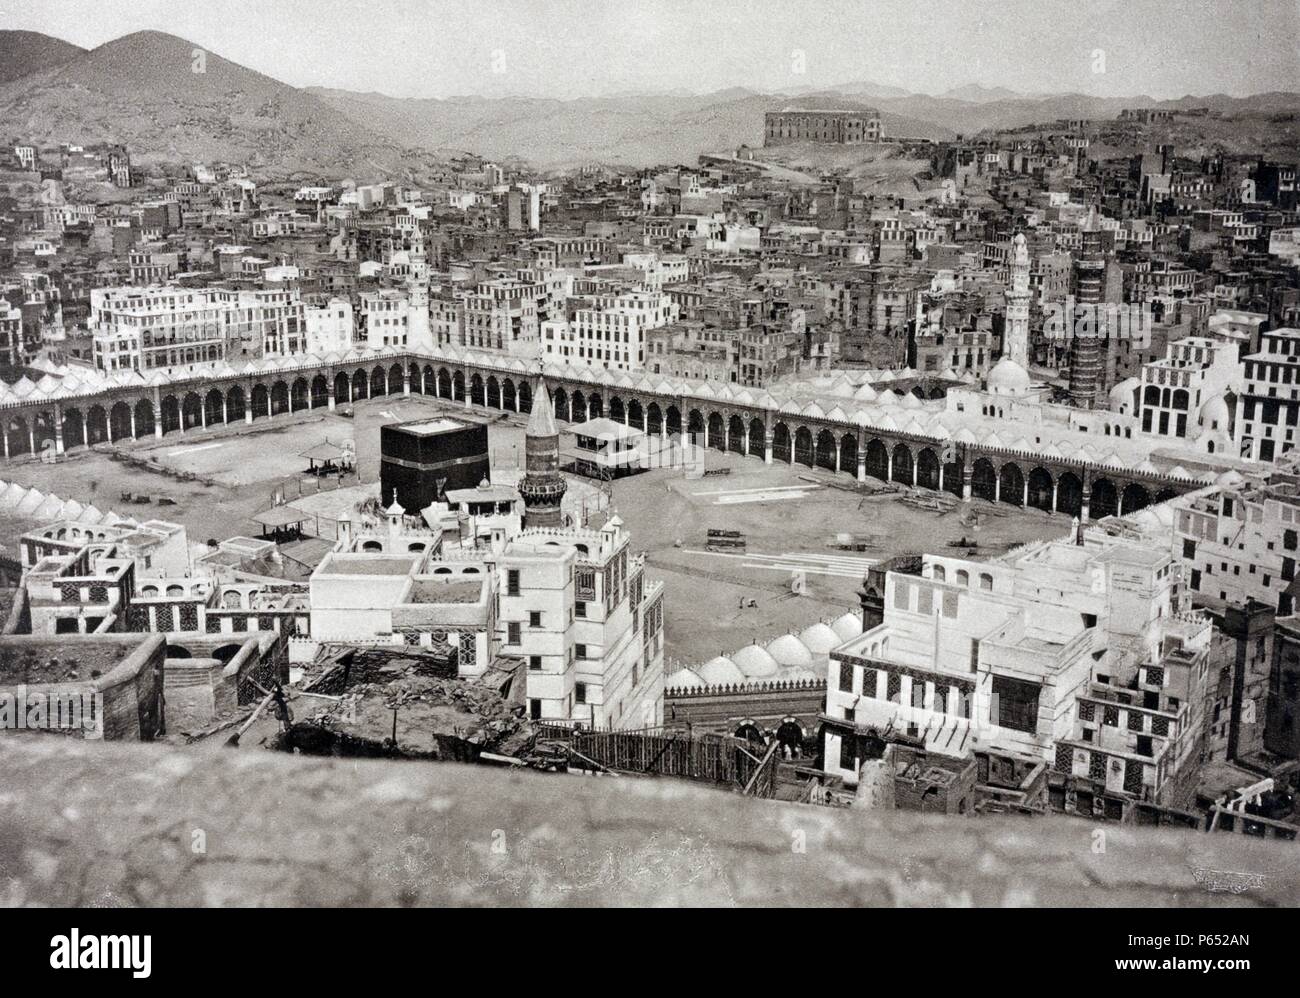 Grande Mosquée à La Mecque, en Arabie Saoudite. Lieu de naissance de Mahomet et un site de Muhammad's première révélation du Coran, La Mecque est considérée comme la ville sainte de la religion de l'Islam Banque D'Images